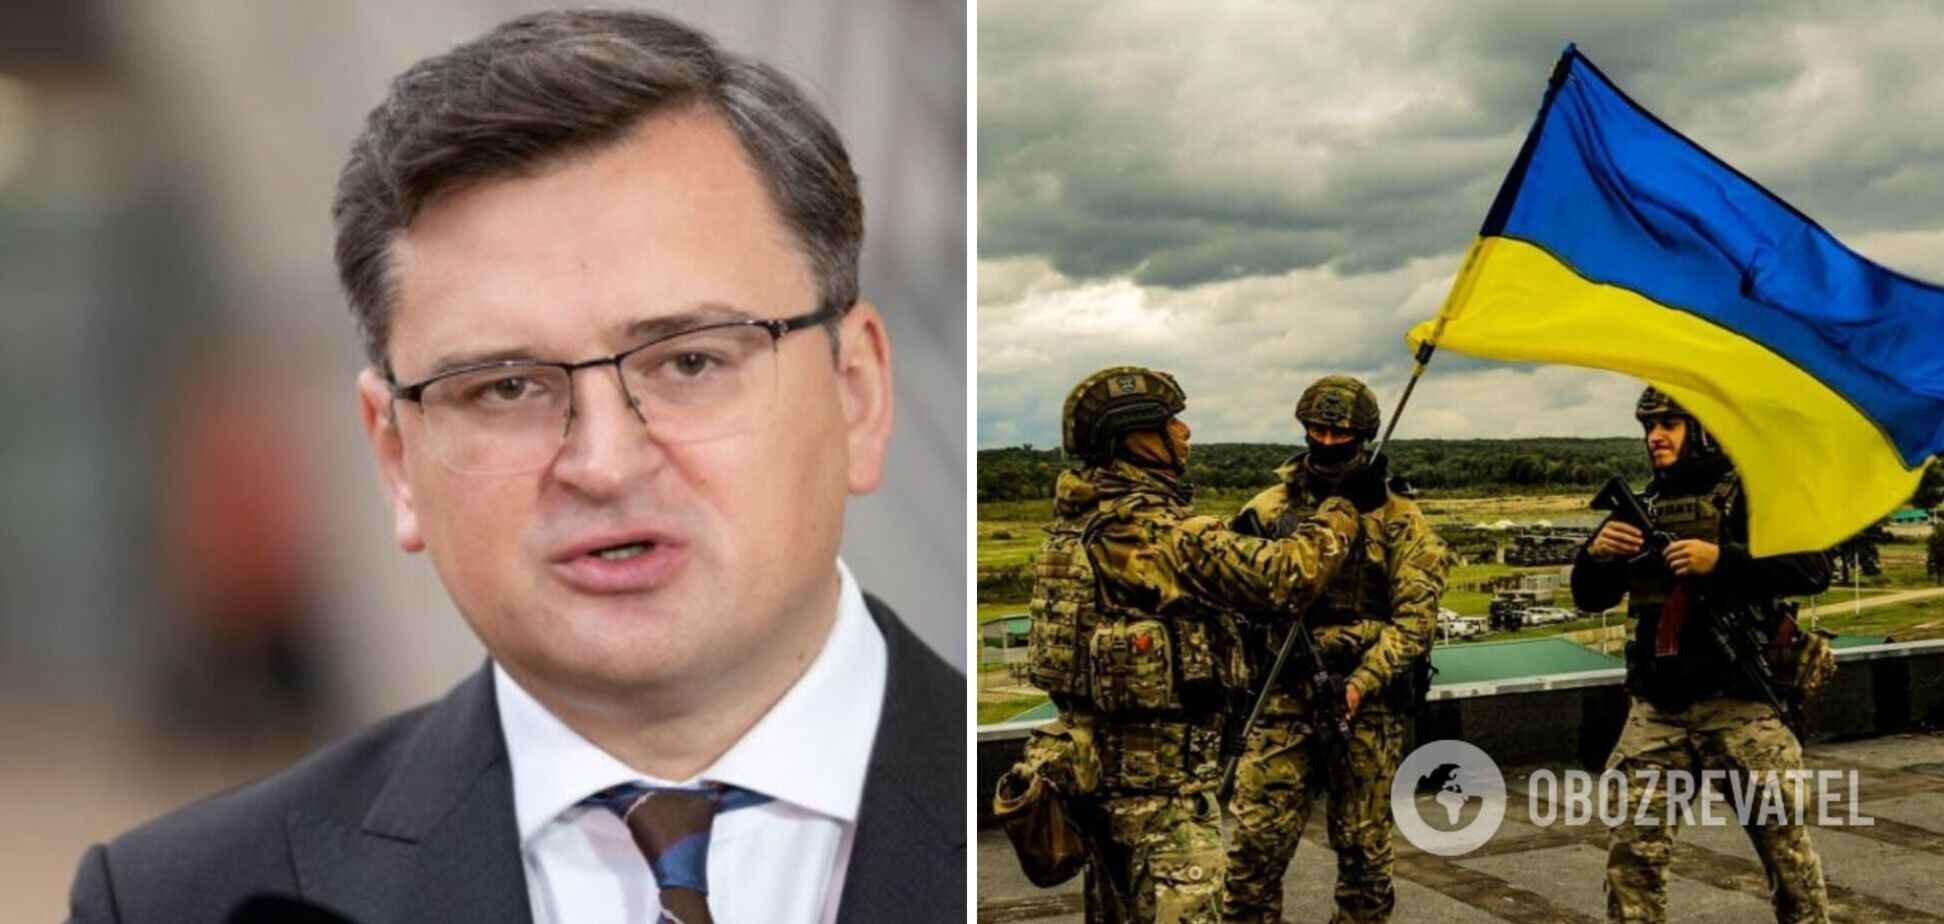 Перемога України у війні з Росією є досяжною, партнери мають не сумніватися в цьому, а допомагати, – Кулеба